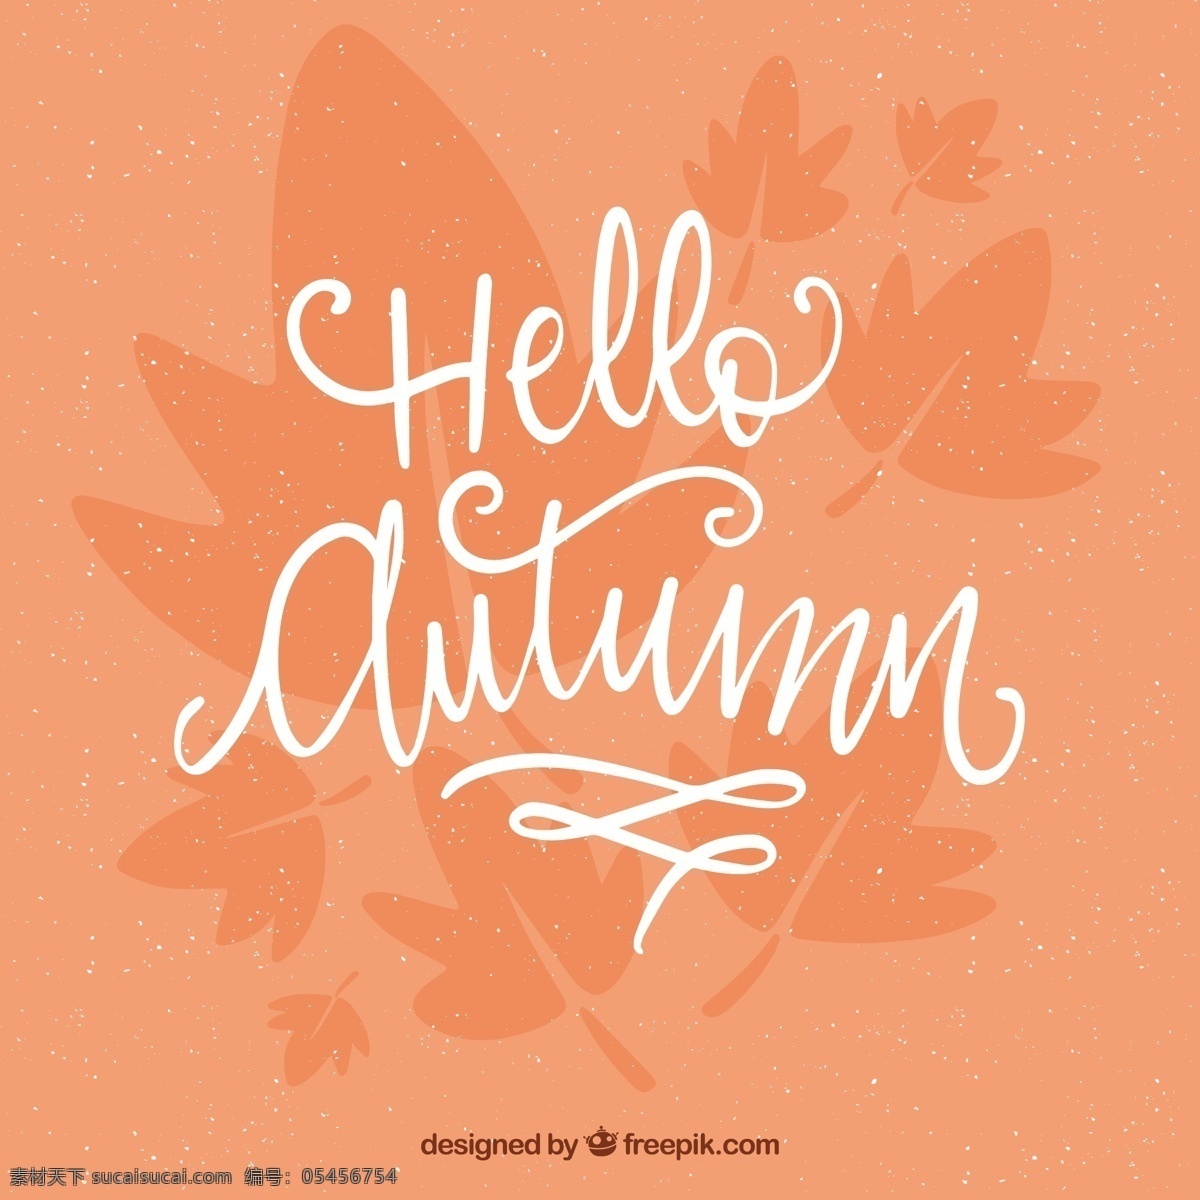 你好 秋天 鲑鱼背景 背景 树叶 自然 印刷术 森林 字体 文字 树木 颜色 信息 树枝 温暖 秋叶